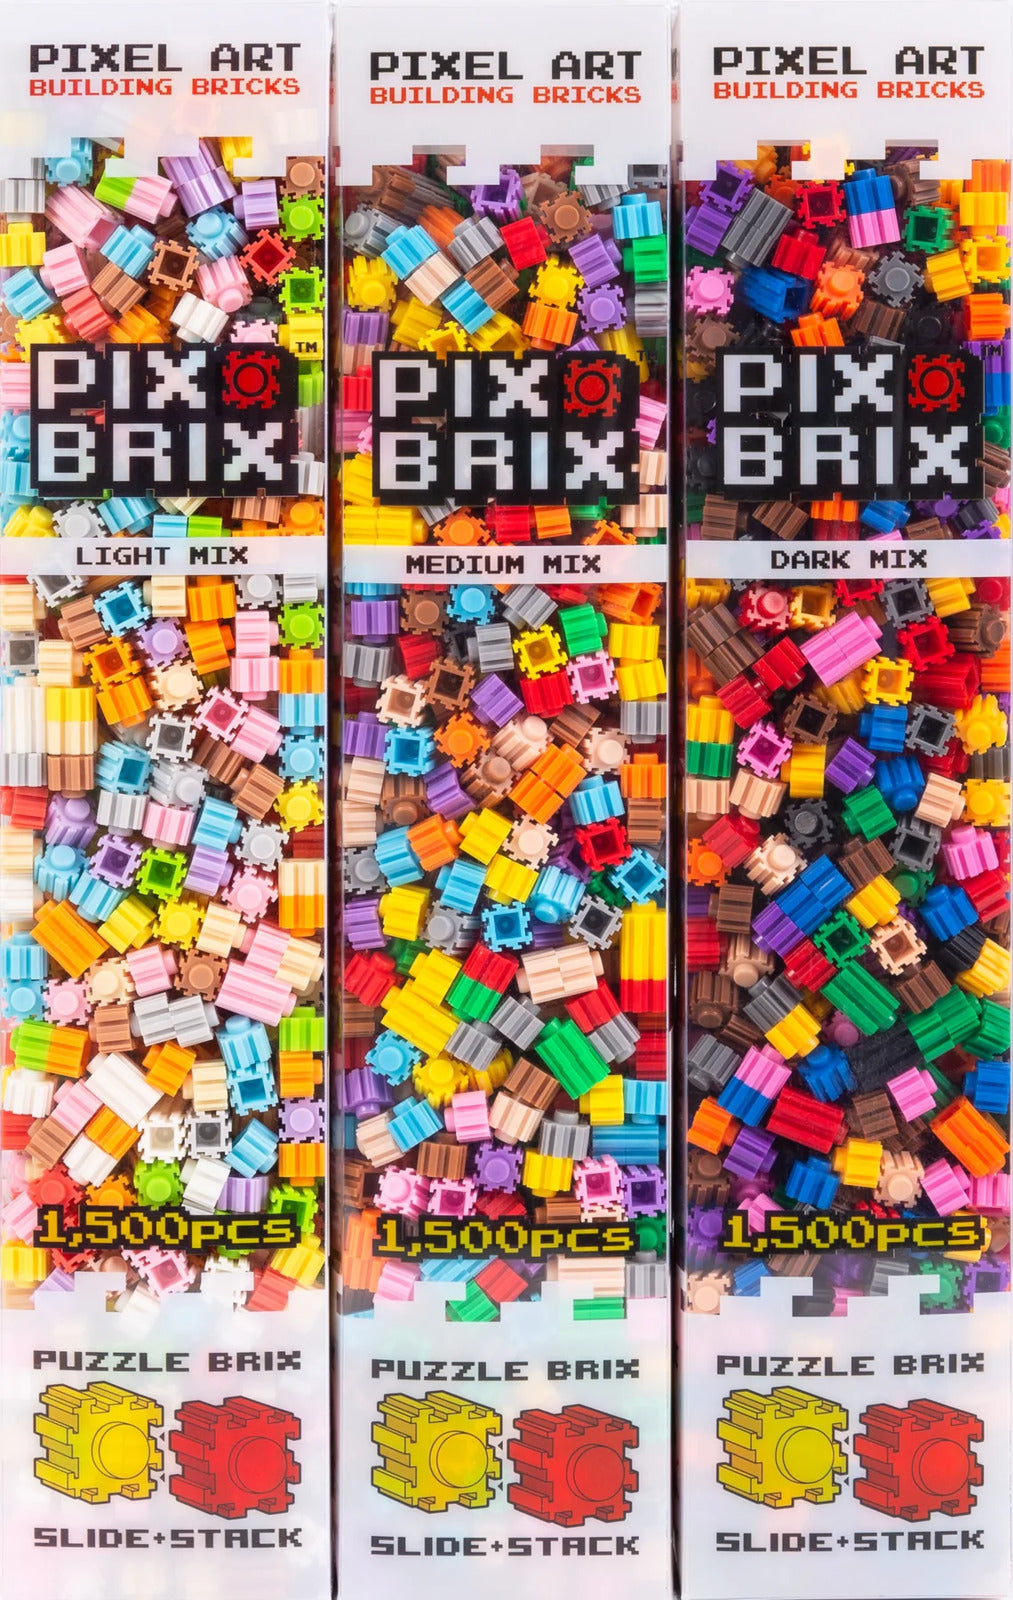  Pix Brix Pixel Art Puzzle Bricks - 3,000 Piece Pixel Art  Container, 12 Color Light Palette - Interlocking Building Bricks, Create 2D  and 3D Builds Without Water or Glue - Stem